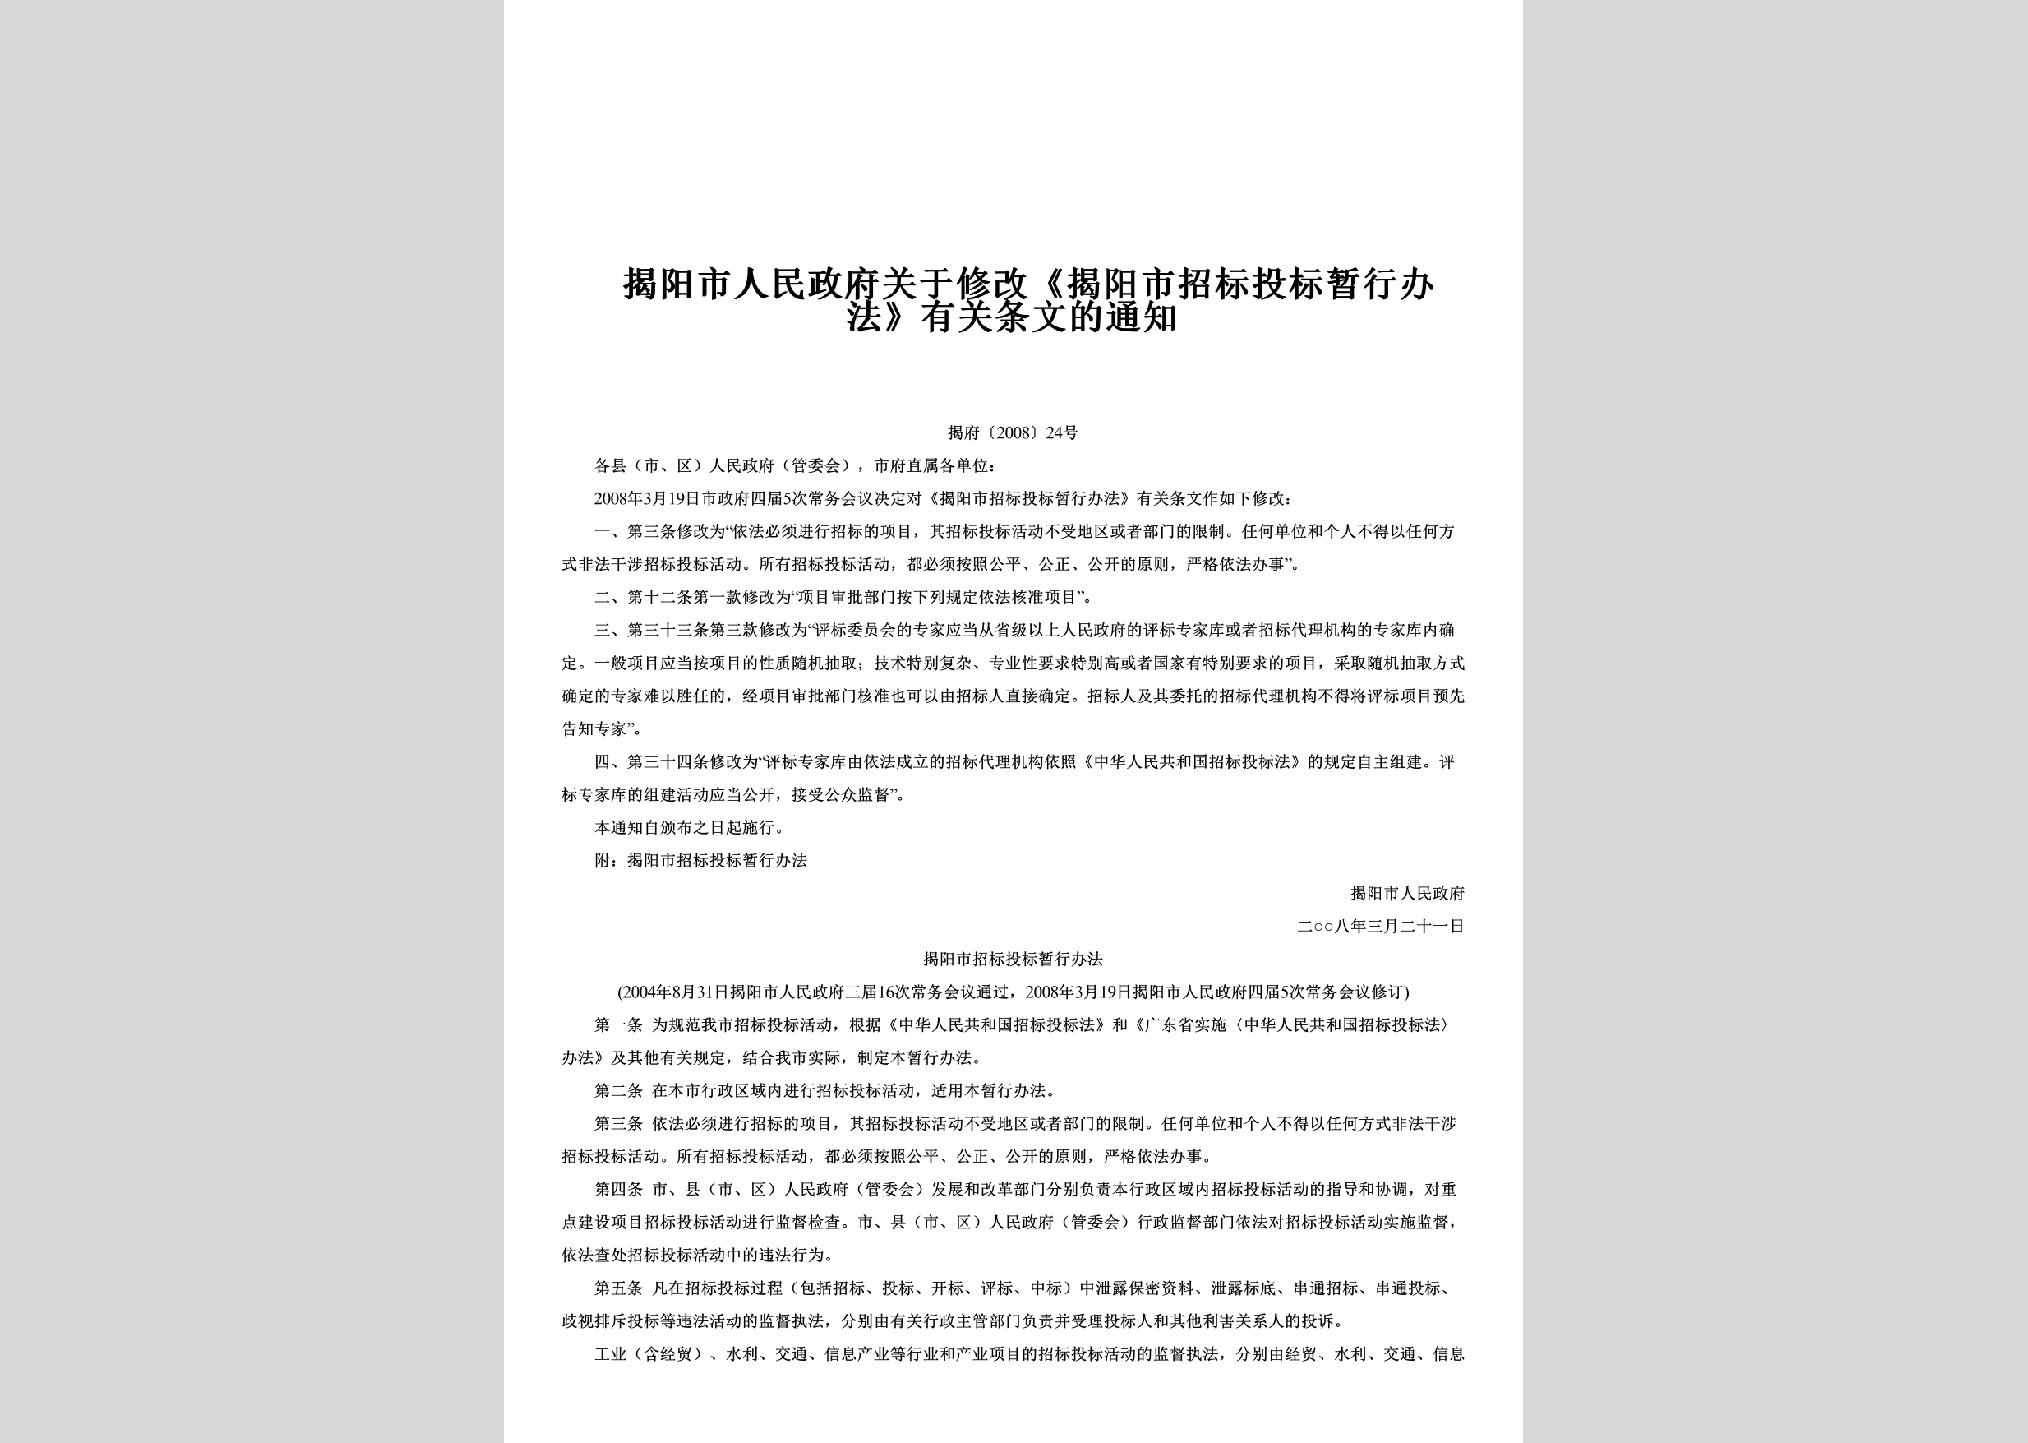 揭府[2008]24号：关于修改《揭阳市招标投标暂行办法》有关条文的通知